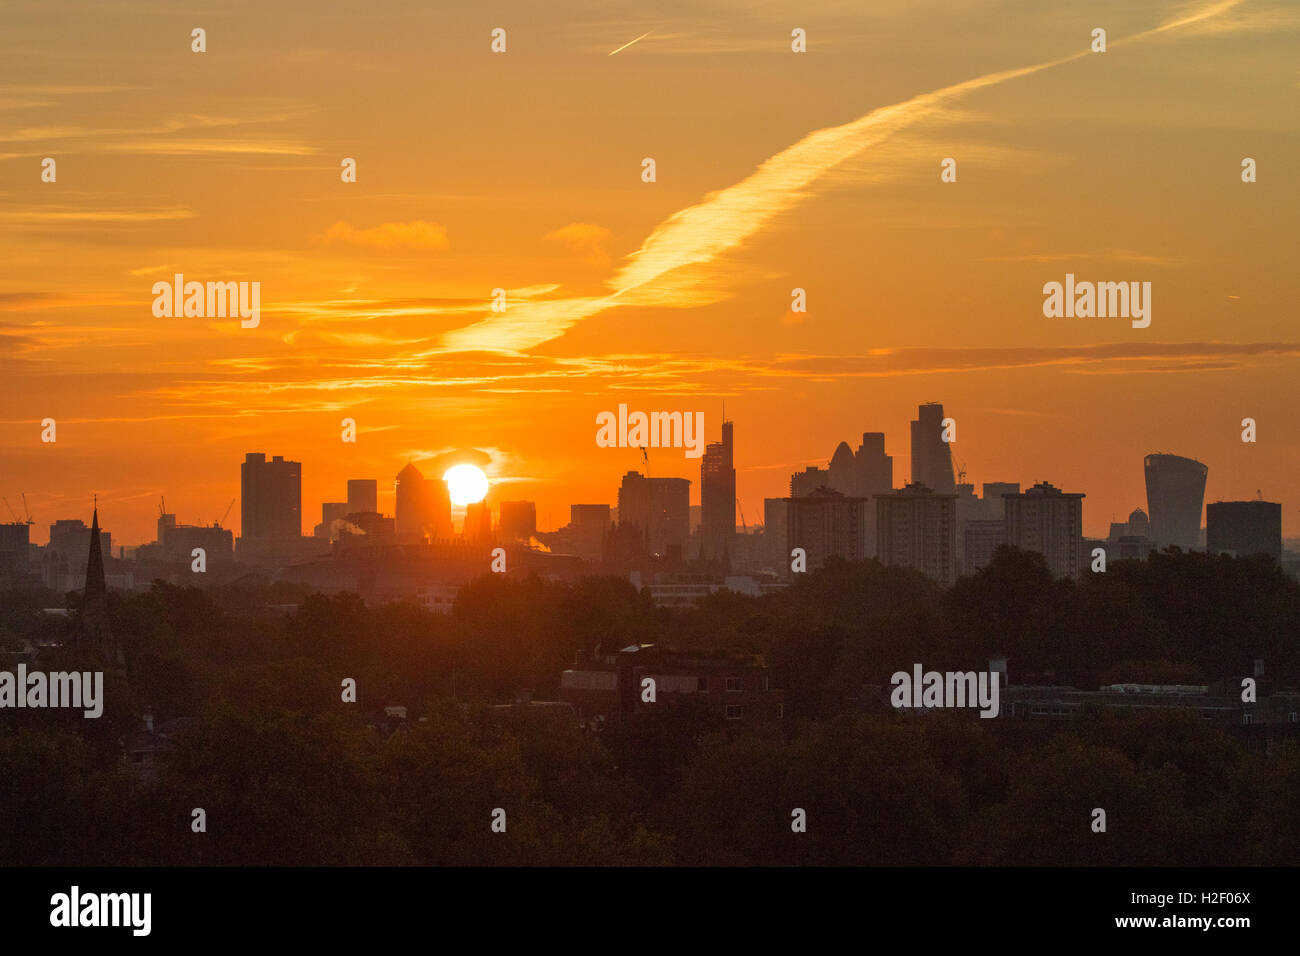 Primrose Hill, Londres, le 28 octobre 2016. Météo France : Le soleil d'automne se profile derrière les gratte-ciel de Docklands et la ville comme l'aube sur Londres. Crédit : Paul Davey/Alamy Live News Banque D'Images